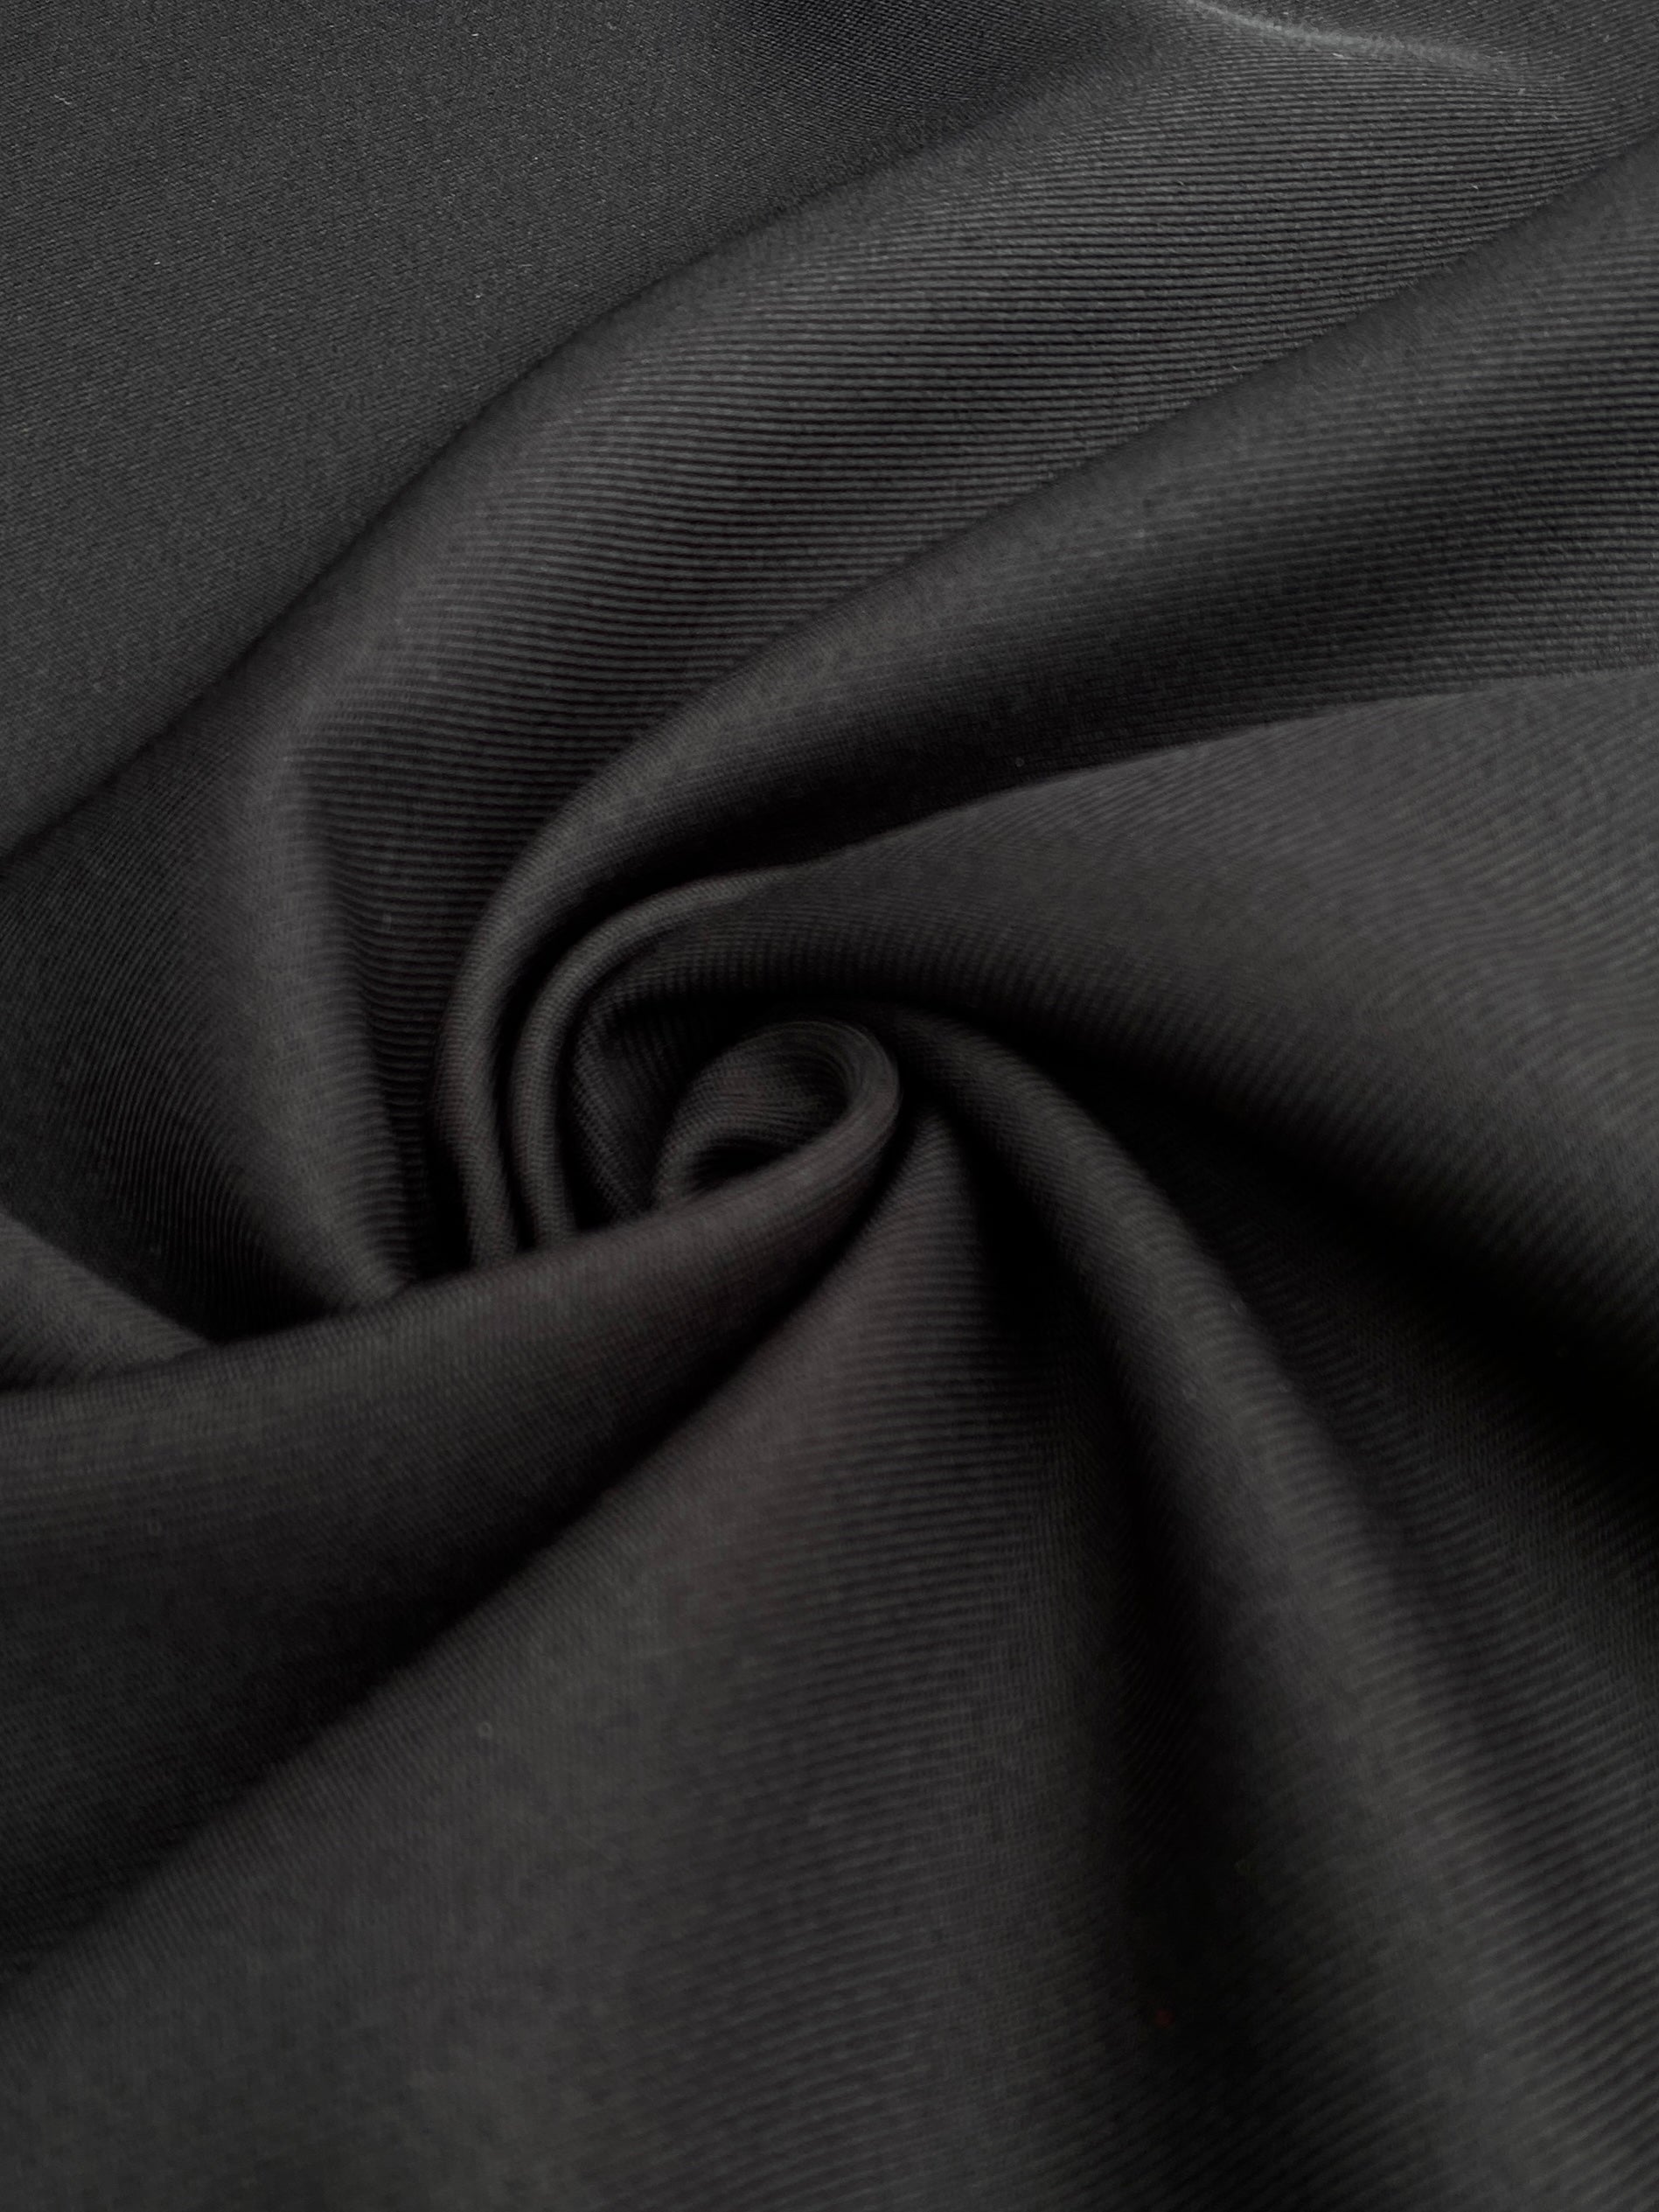  black delaney gabardine, dark grey gabardine fabric, light grey gabardine fabric, gray gabardine, jet black gabardine fabric for pants, gabardine fabric for woman, gabardine for bride, gabardine fabric for gown